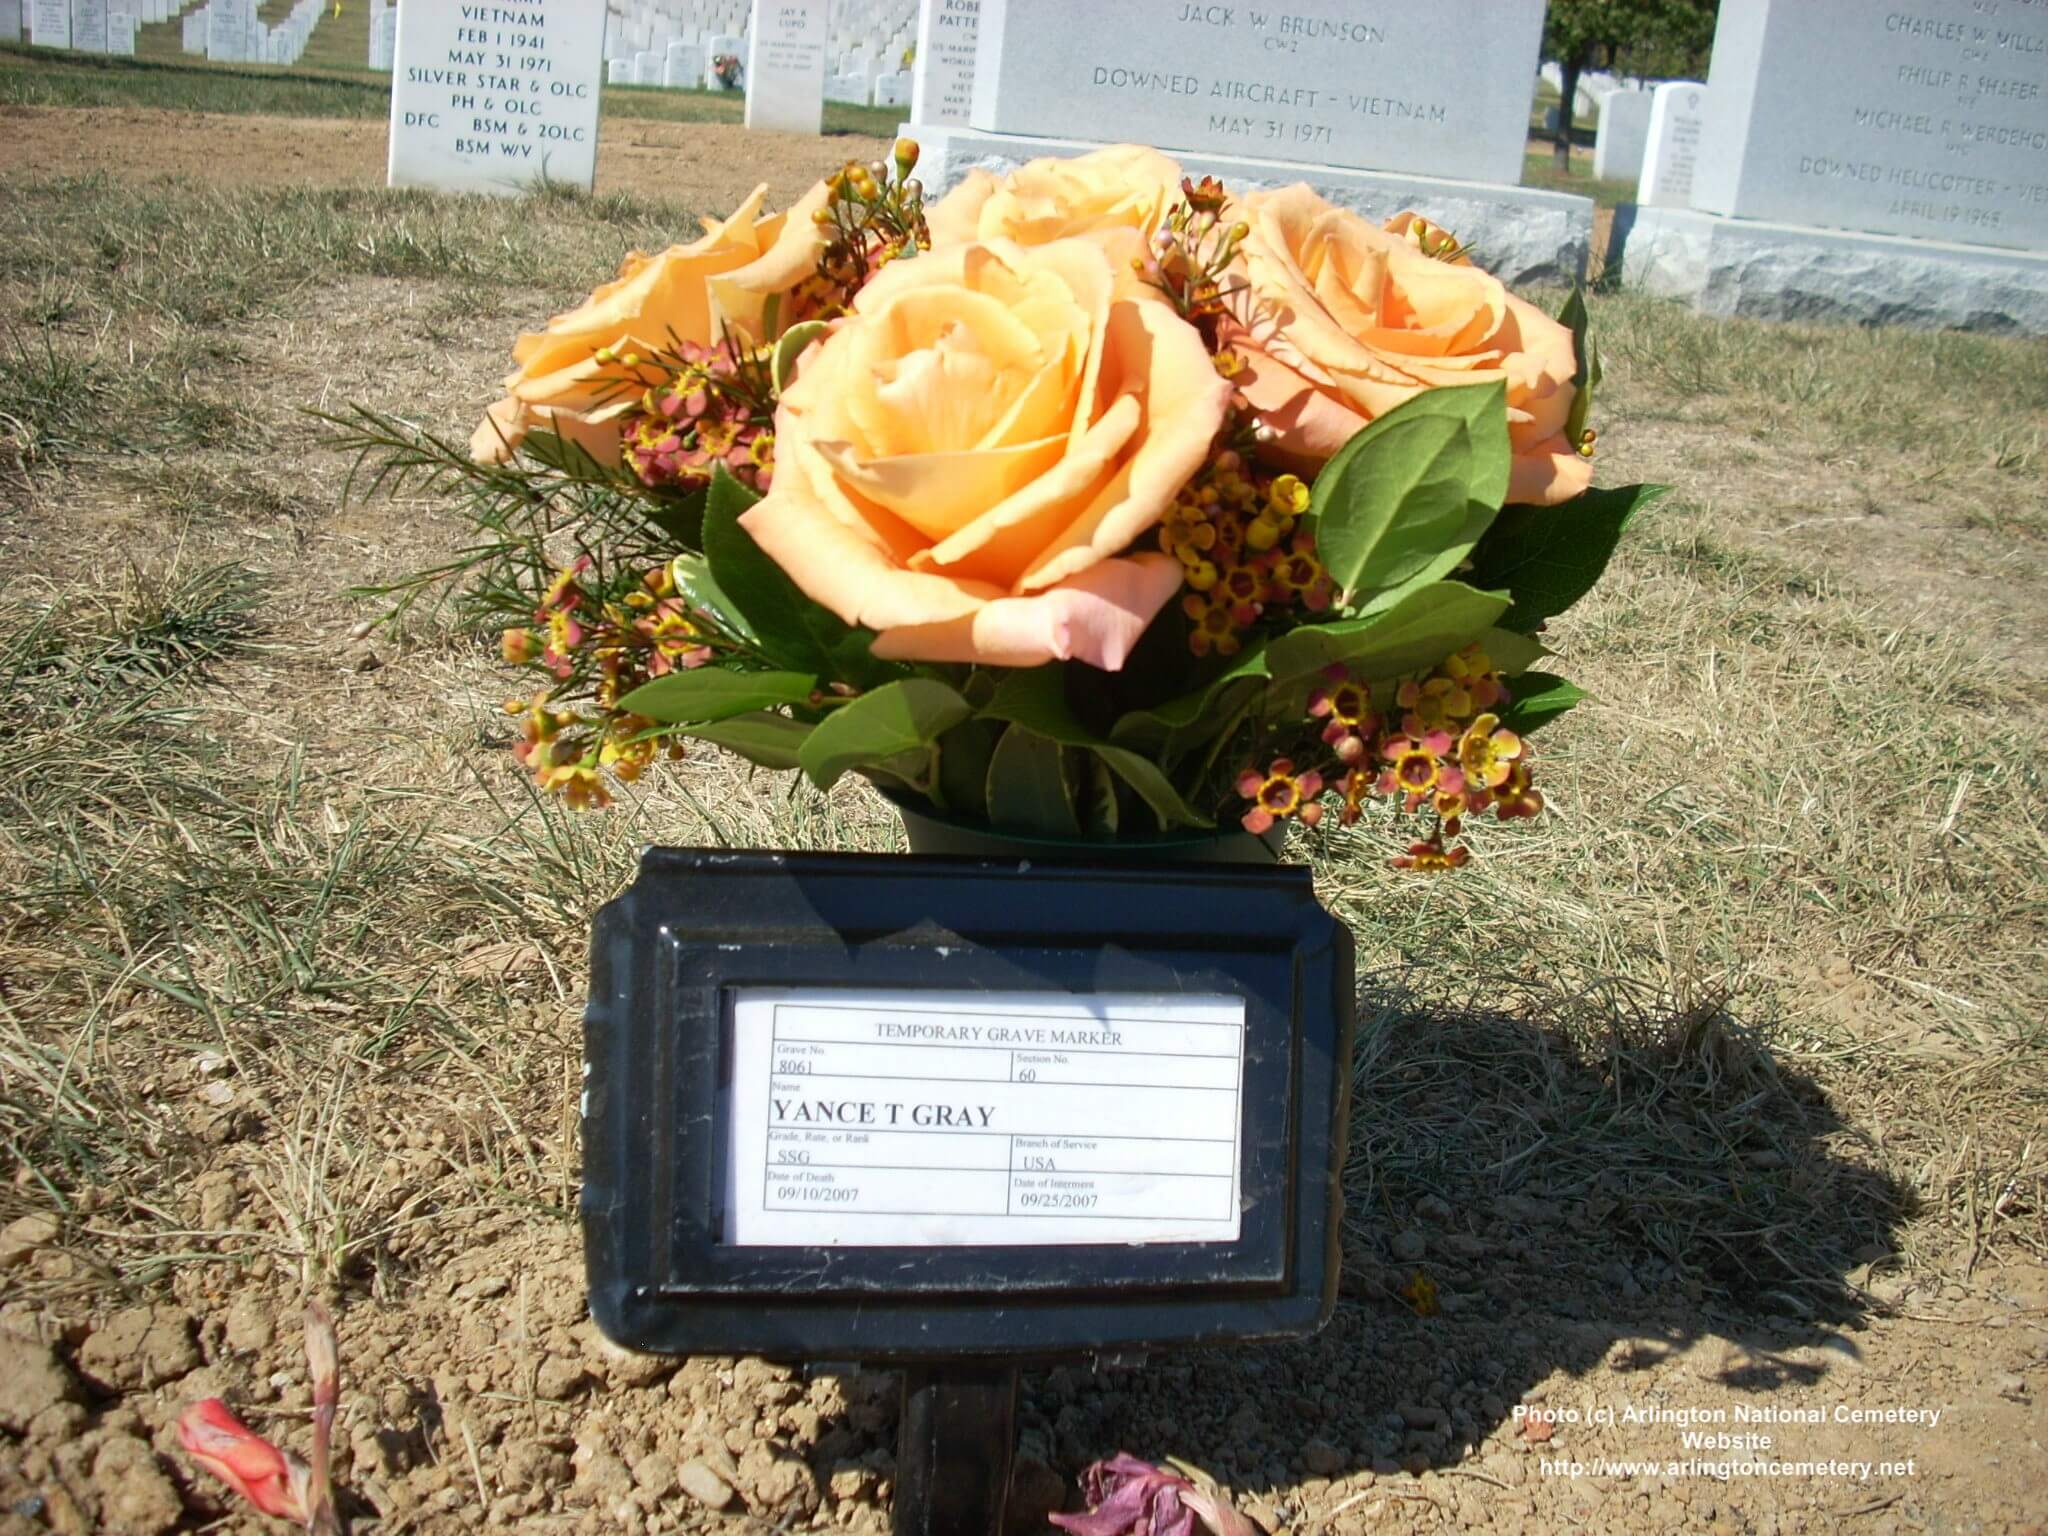 ytgray-gravesite-photo-september-2007-002